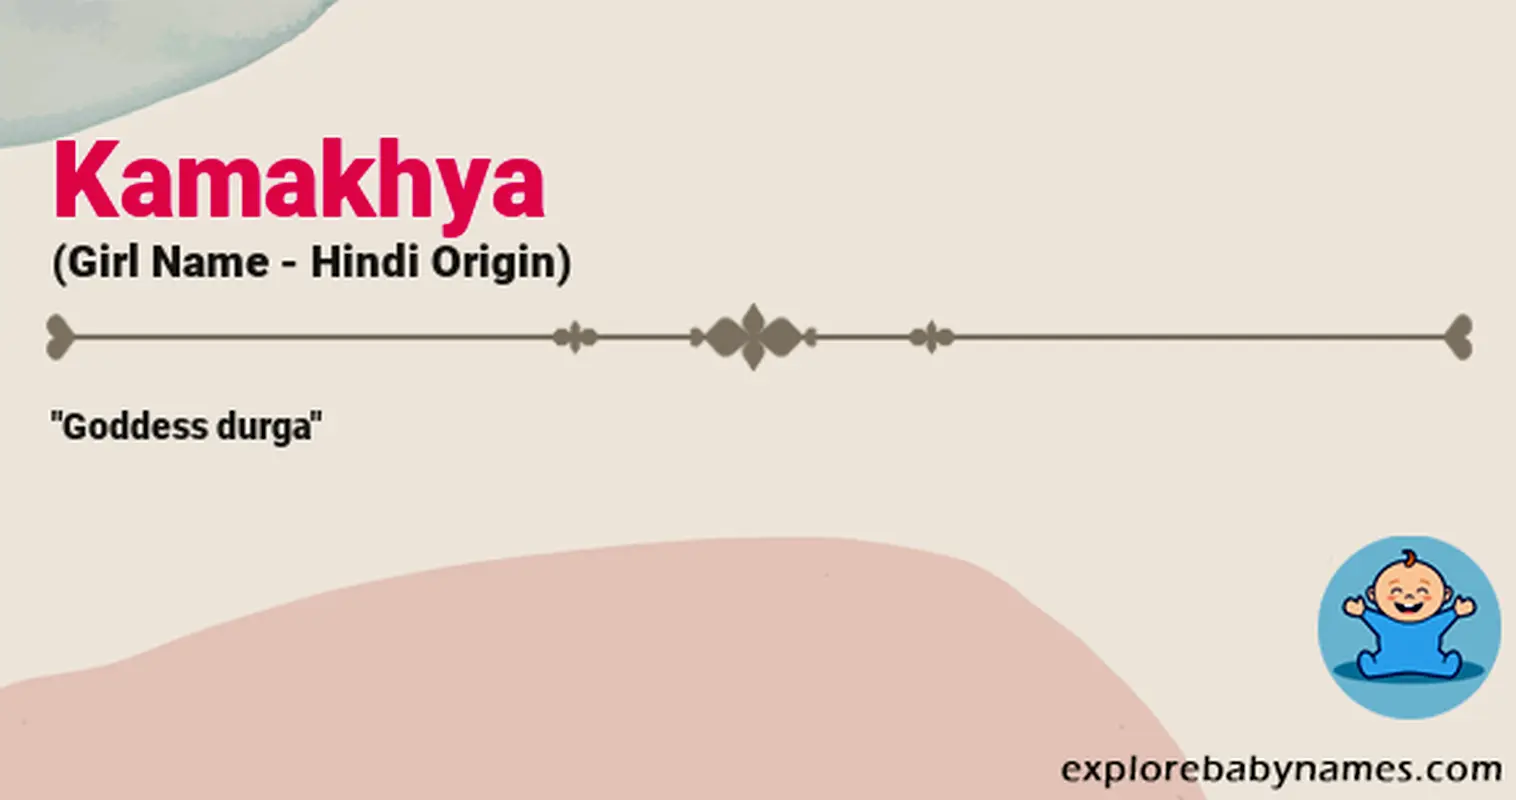 Meaning of Kamakhya